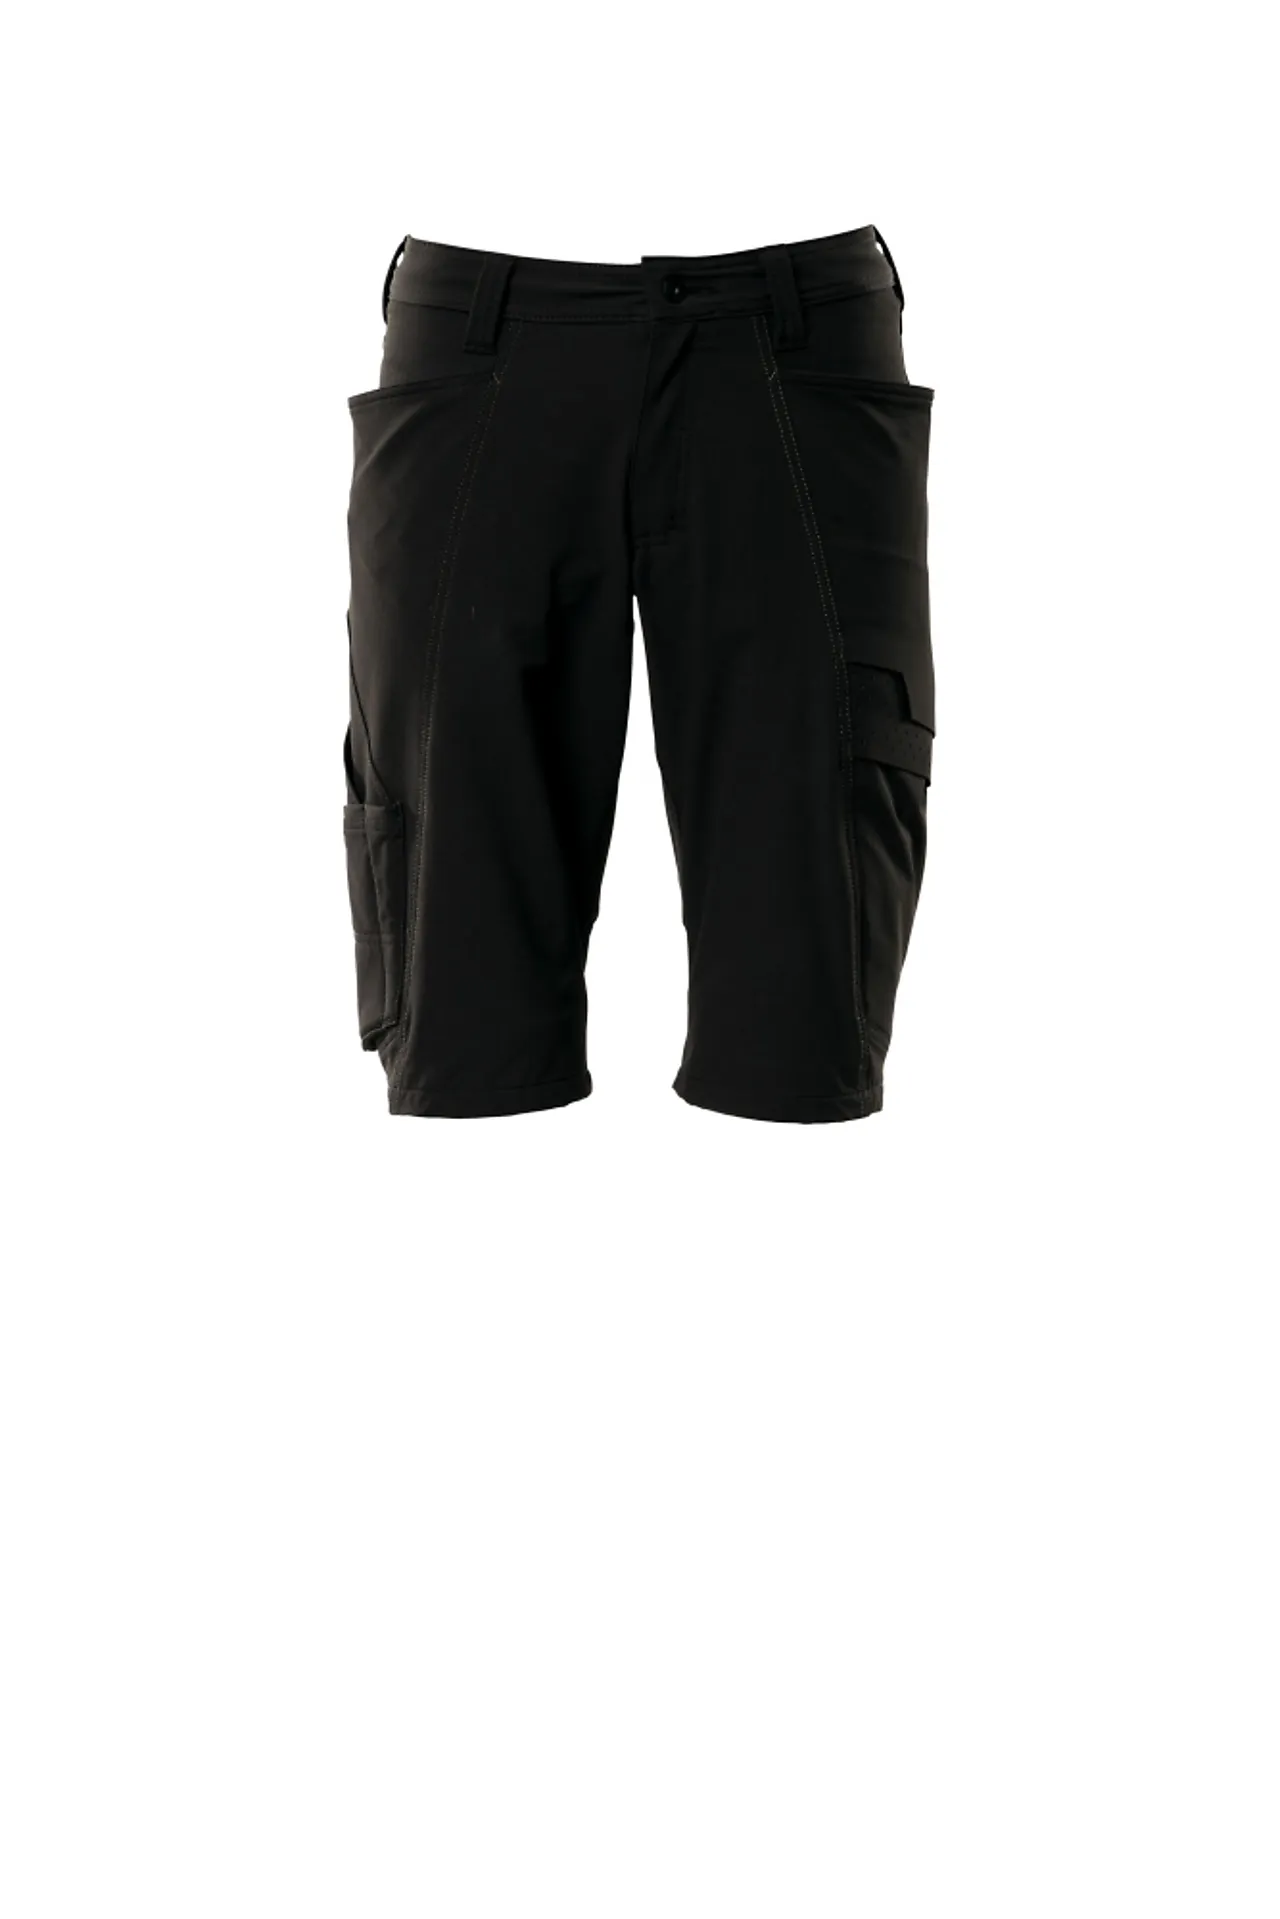 Shorts 18149 svart c60 shorts, fireveis-stretch, lav vekt